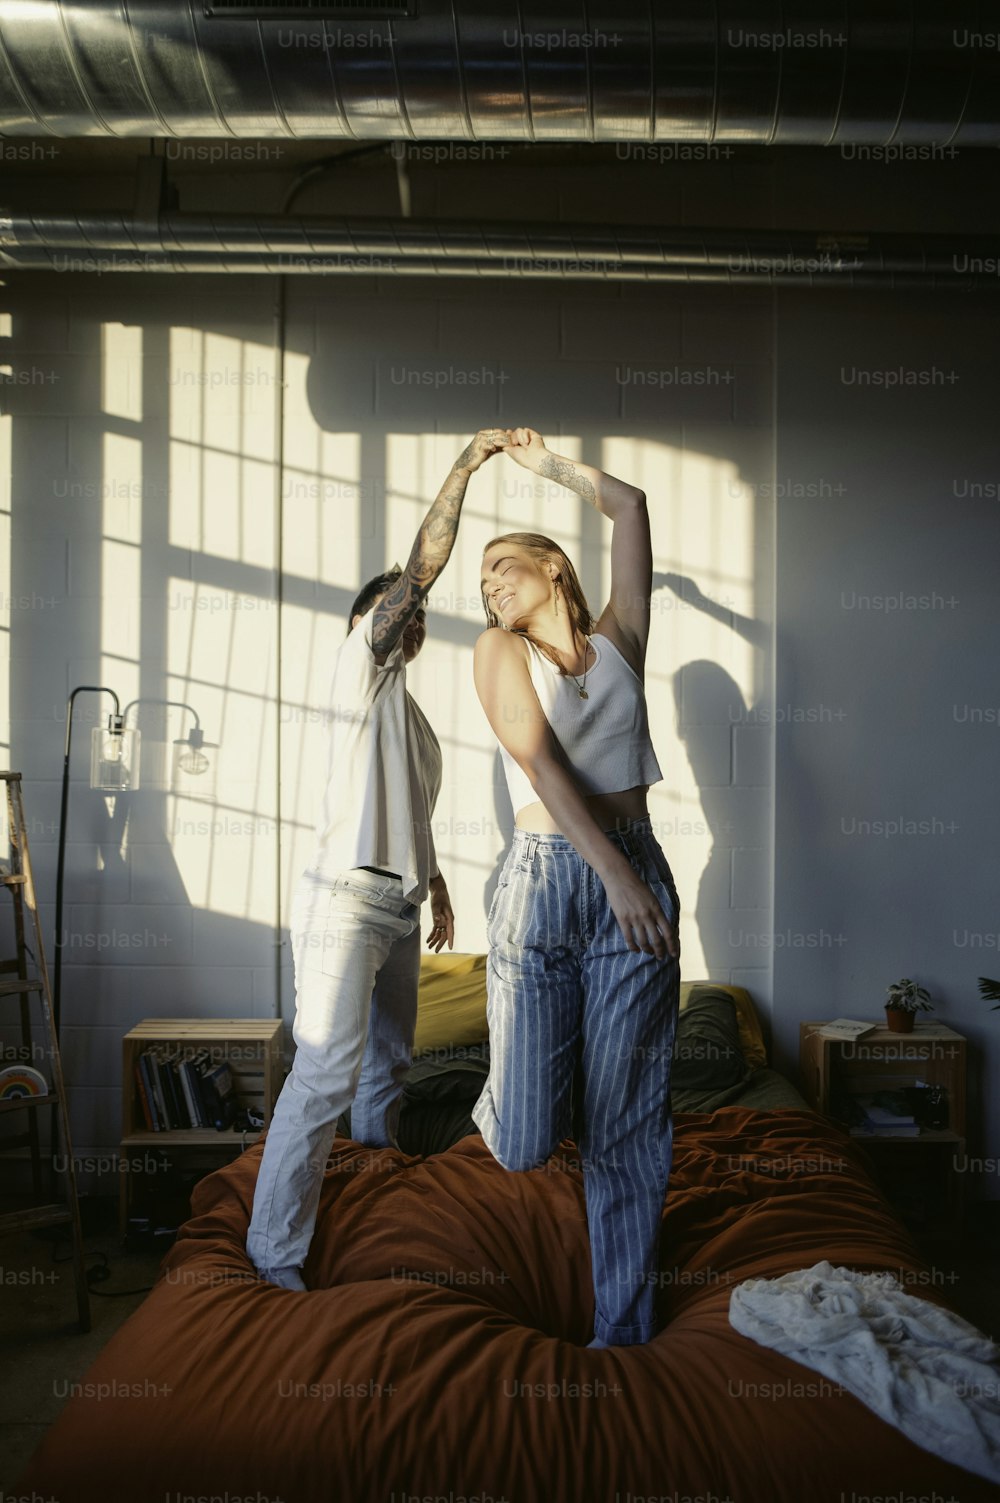 Una mujer parada encima de una cama junto a un hombre